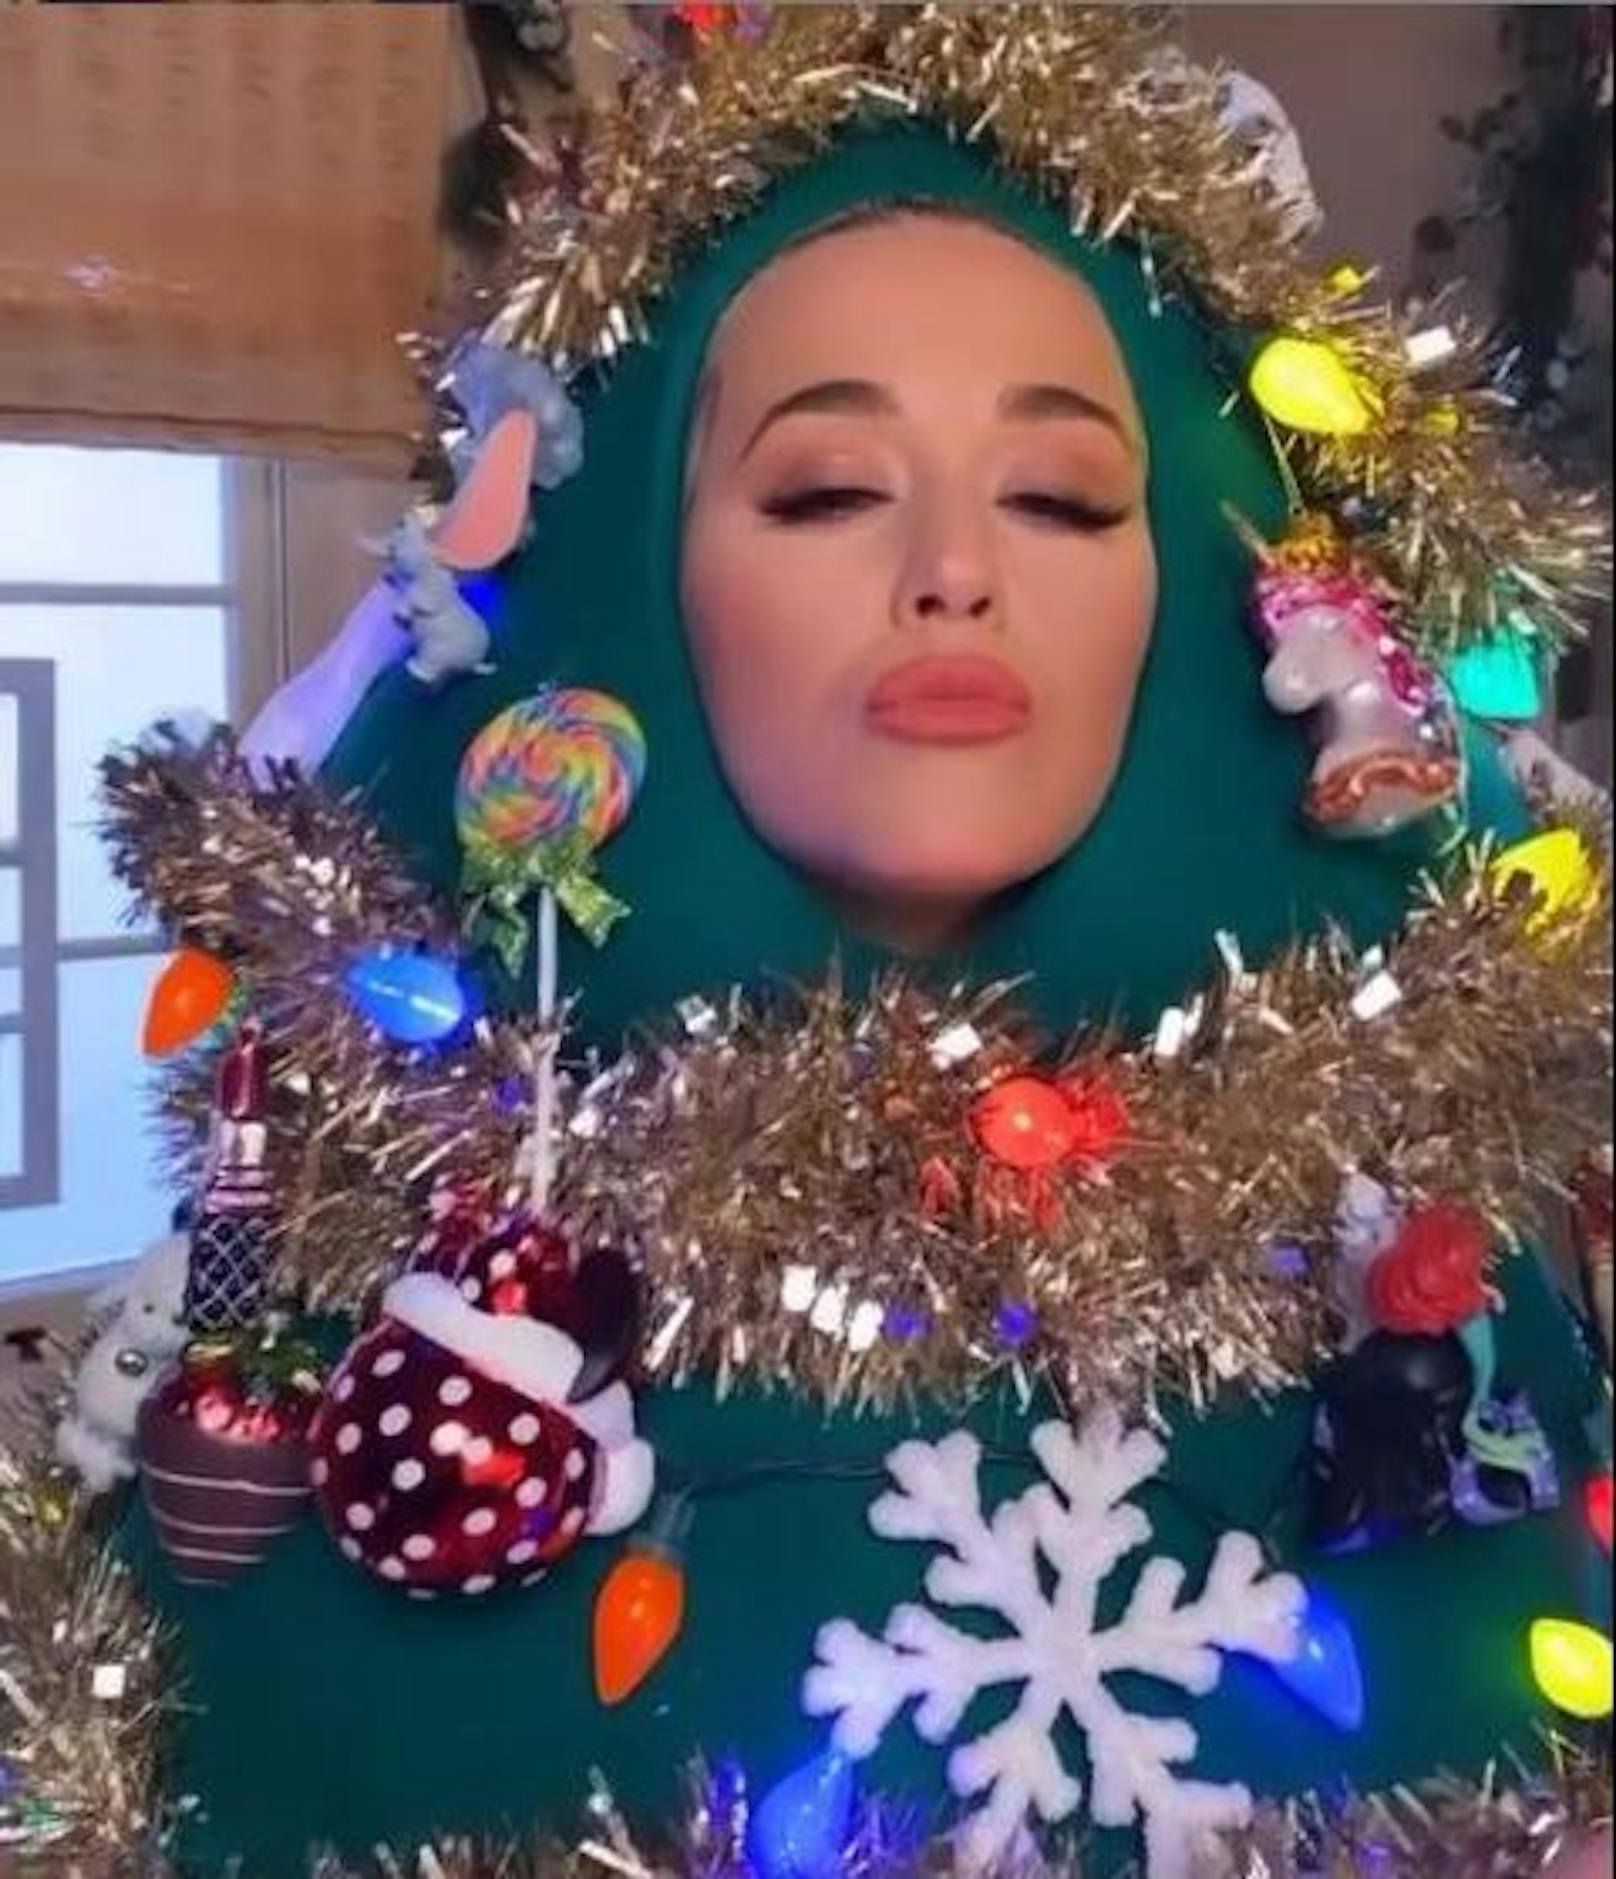 01.12.2020: Sängerin <strong>Katy Perry</strong> freut sich schon so sehr auf das bevorstehende Weihnachtsfest, dass sie gleich selbst zum funkelnden Christbaum wird. "Warum einen Baum fällen, wenn du selbst zum Baum werden kannst?" fragt sich die Neo-Mama in ihrem Glitzer-Kostüm.